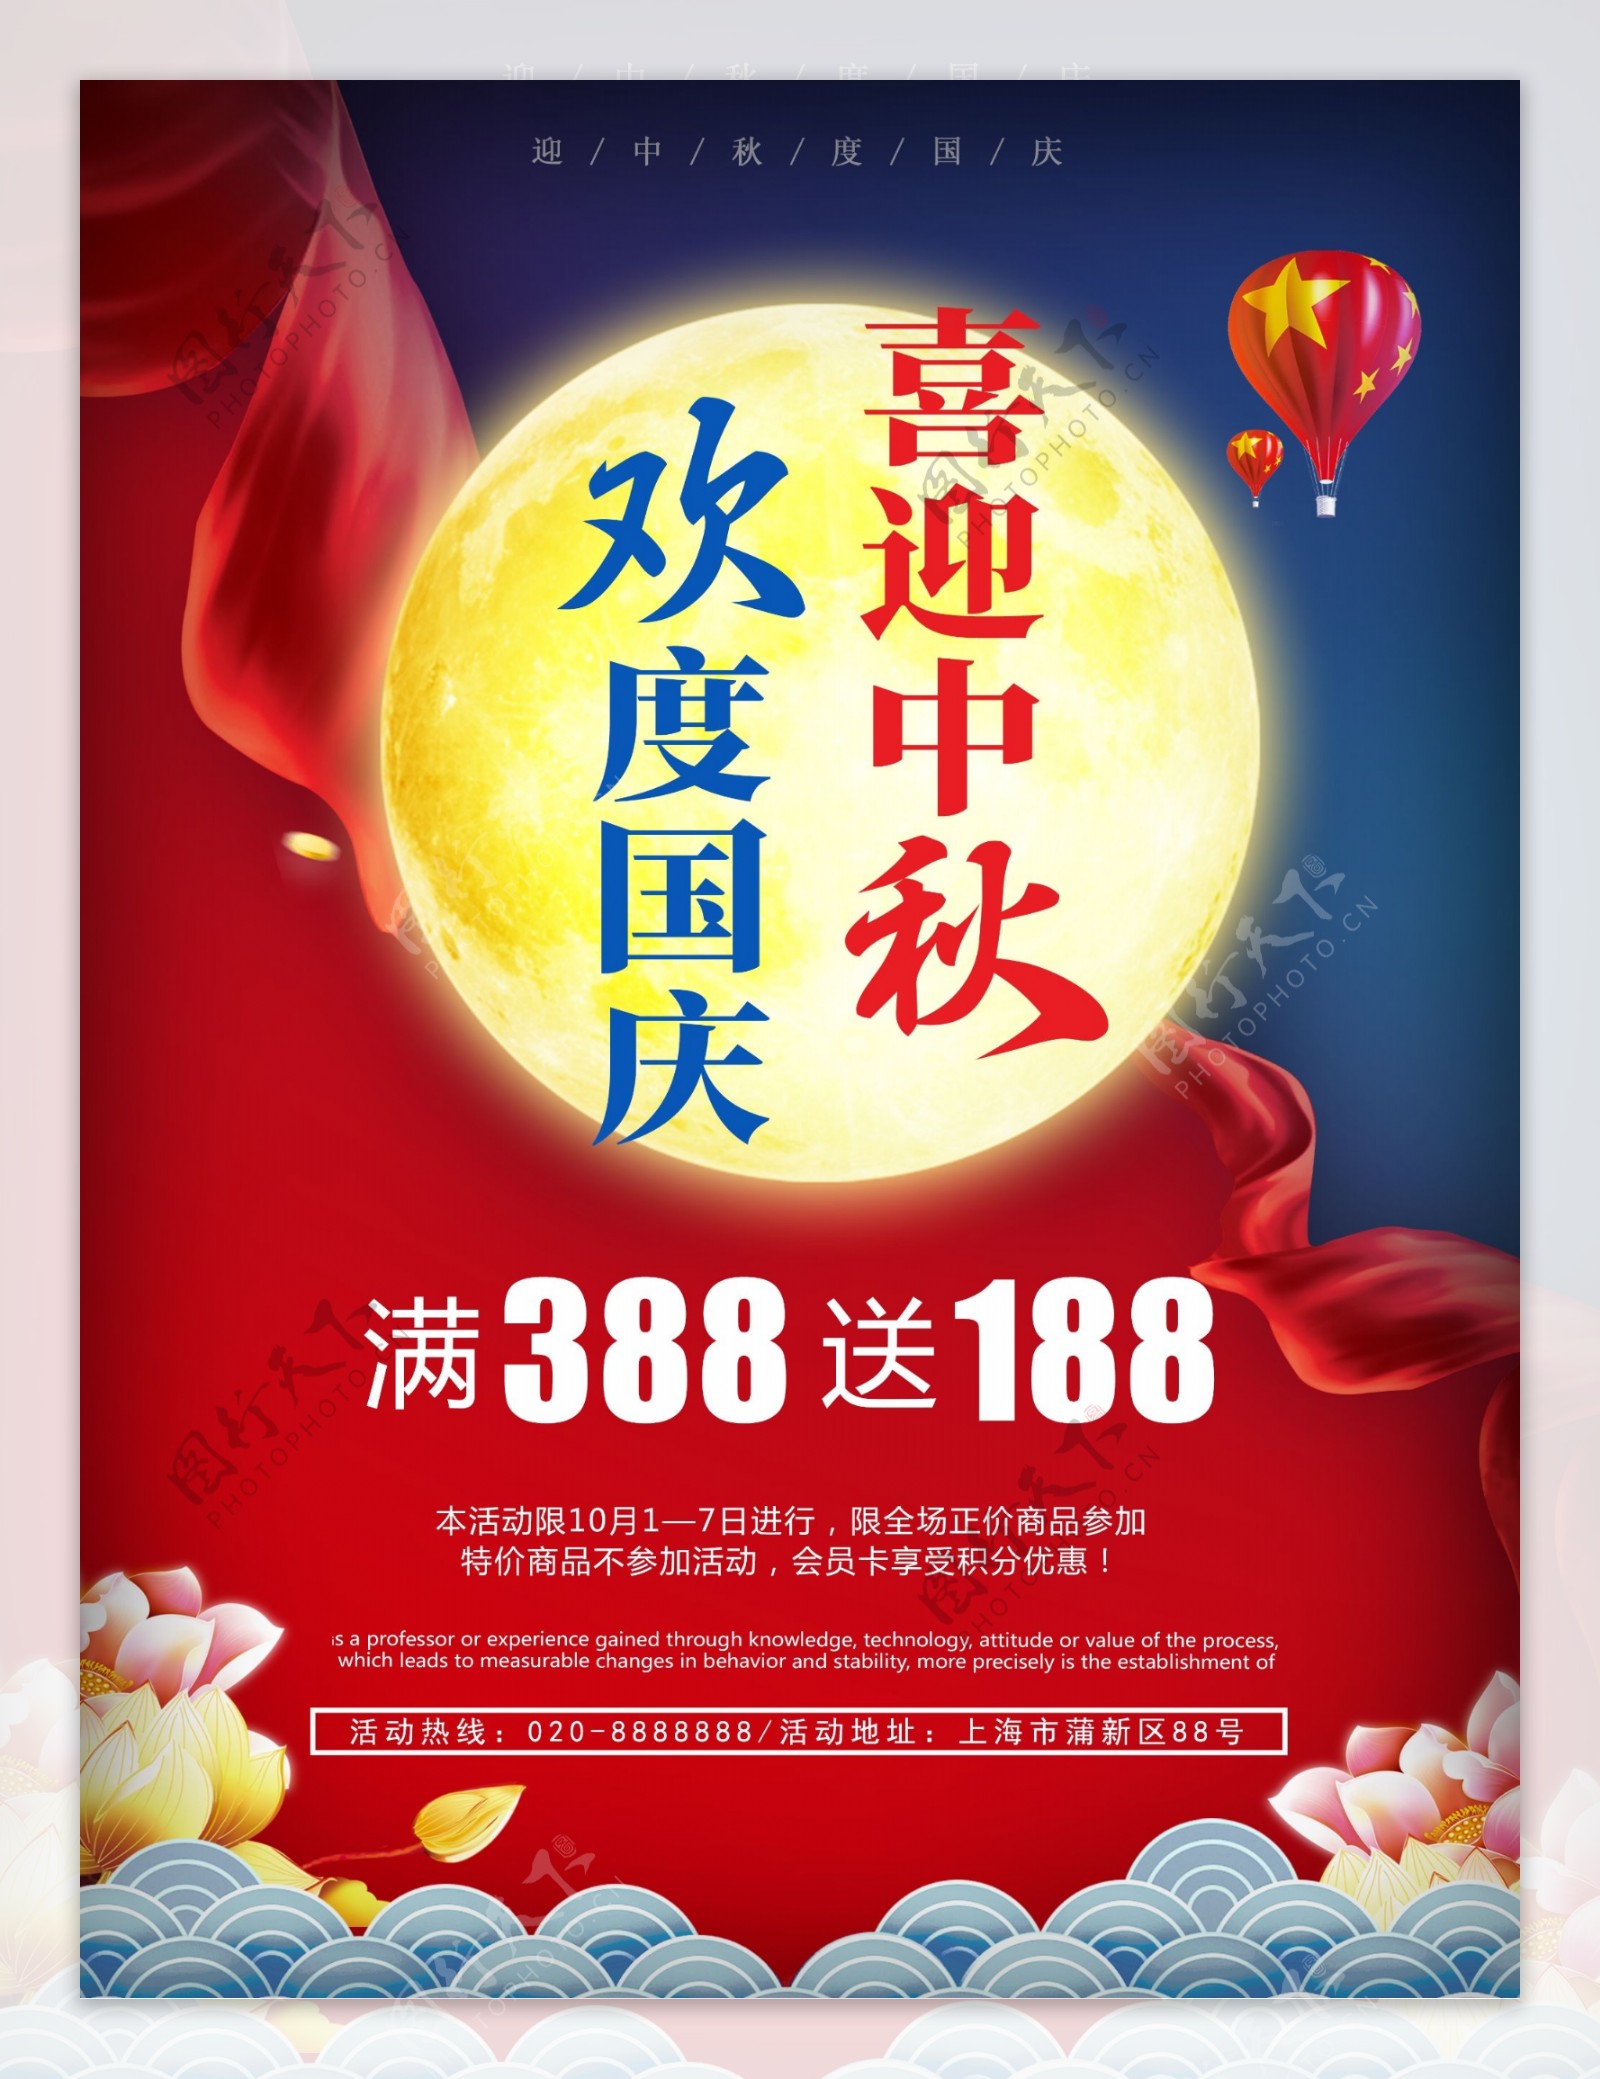 红色蓝色黄色中国风国庆中秋双节促销海报